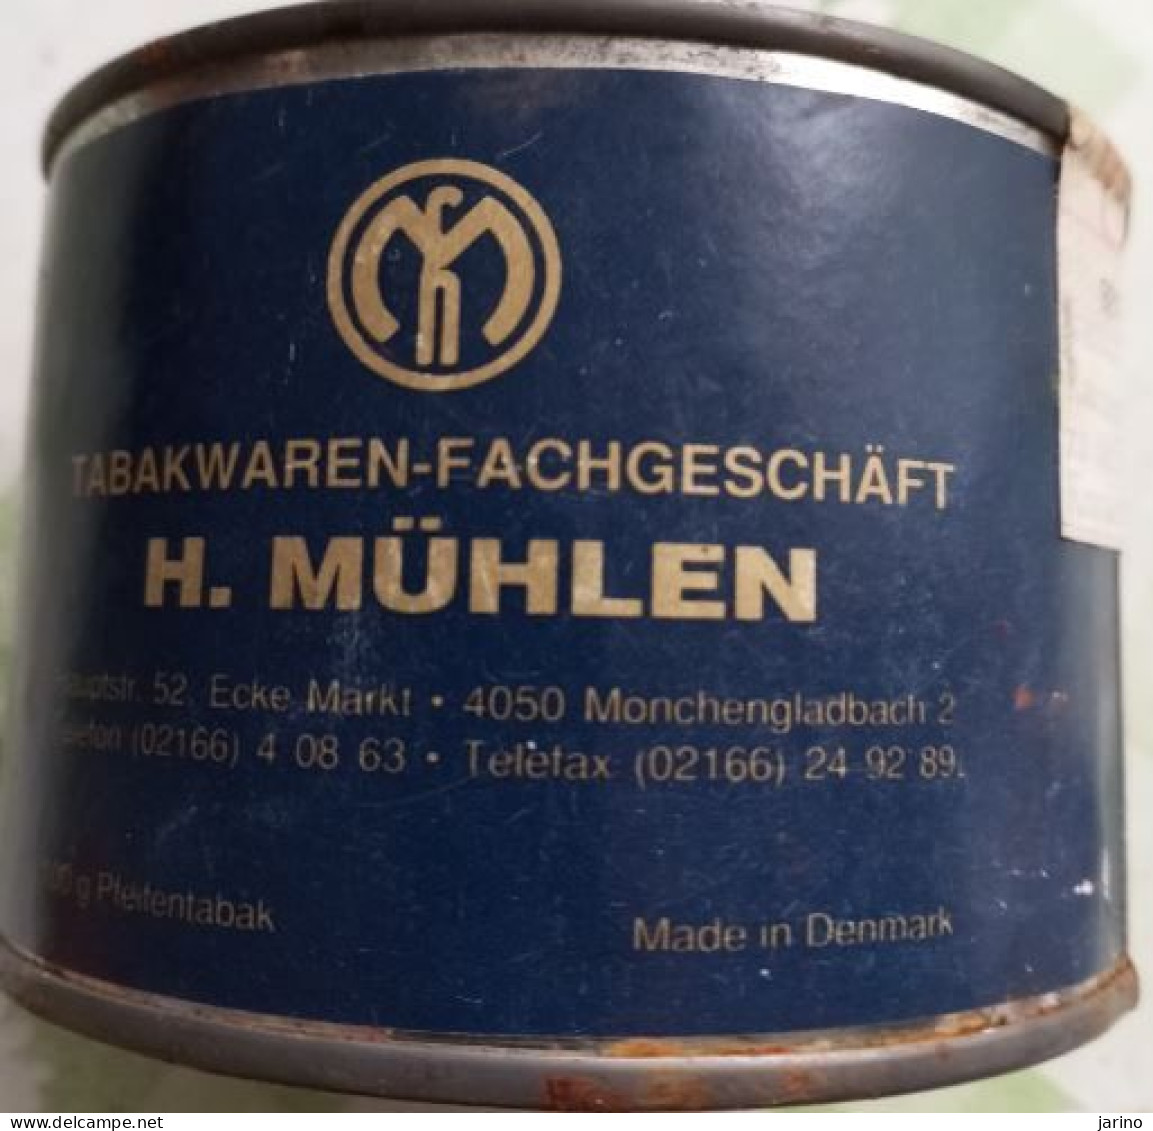 Ancient Empty Metal Tobacco Box Tabakwaren-Fachgeschäft H. MüHLEN, Made In Denmark, Average 10 Cm - Tabaksdozen (leeg)